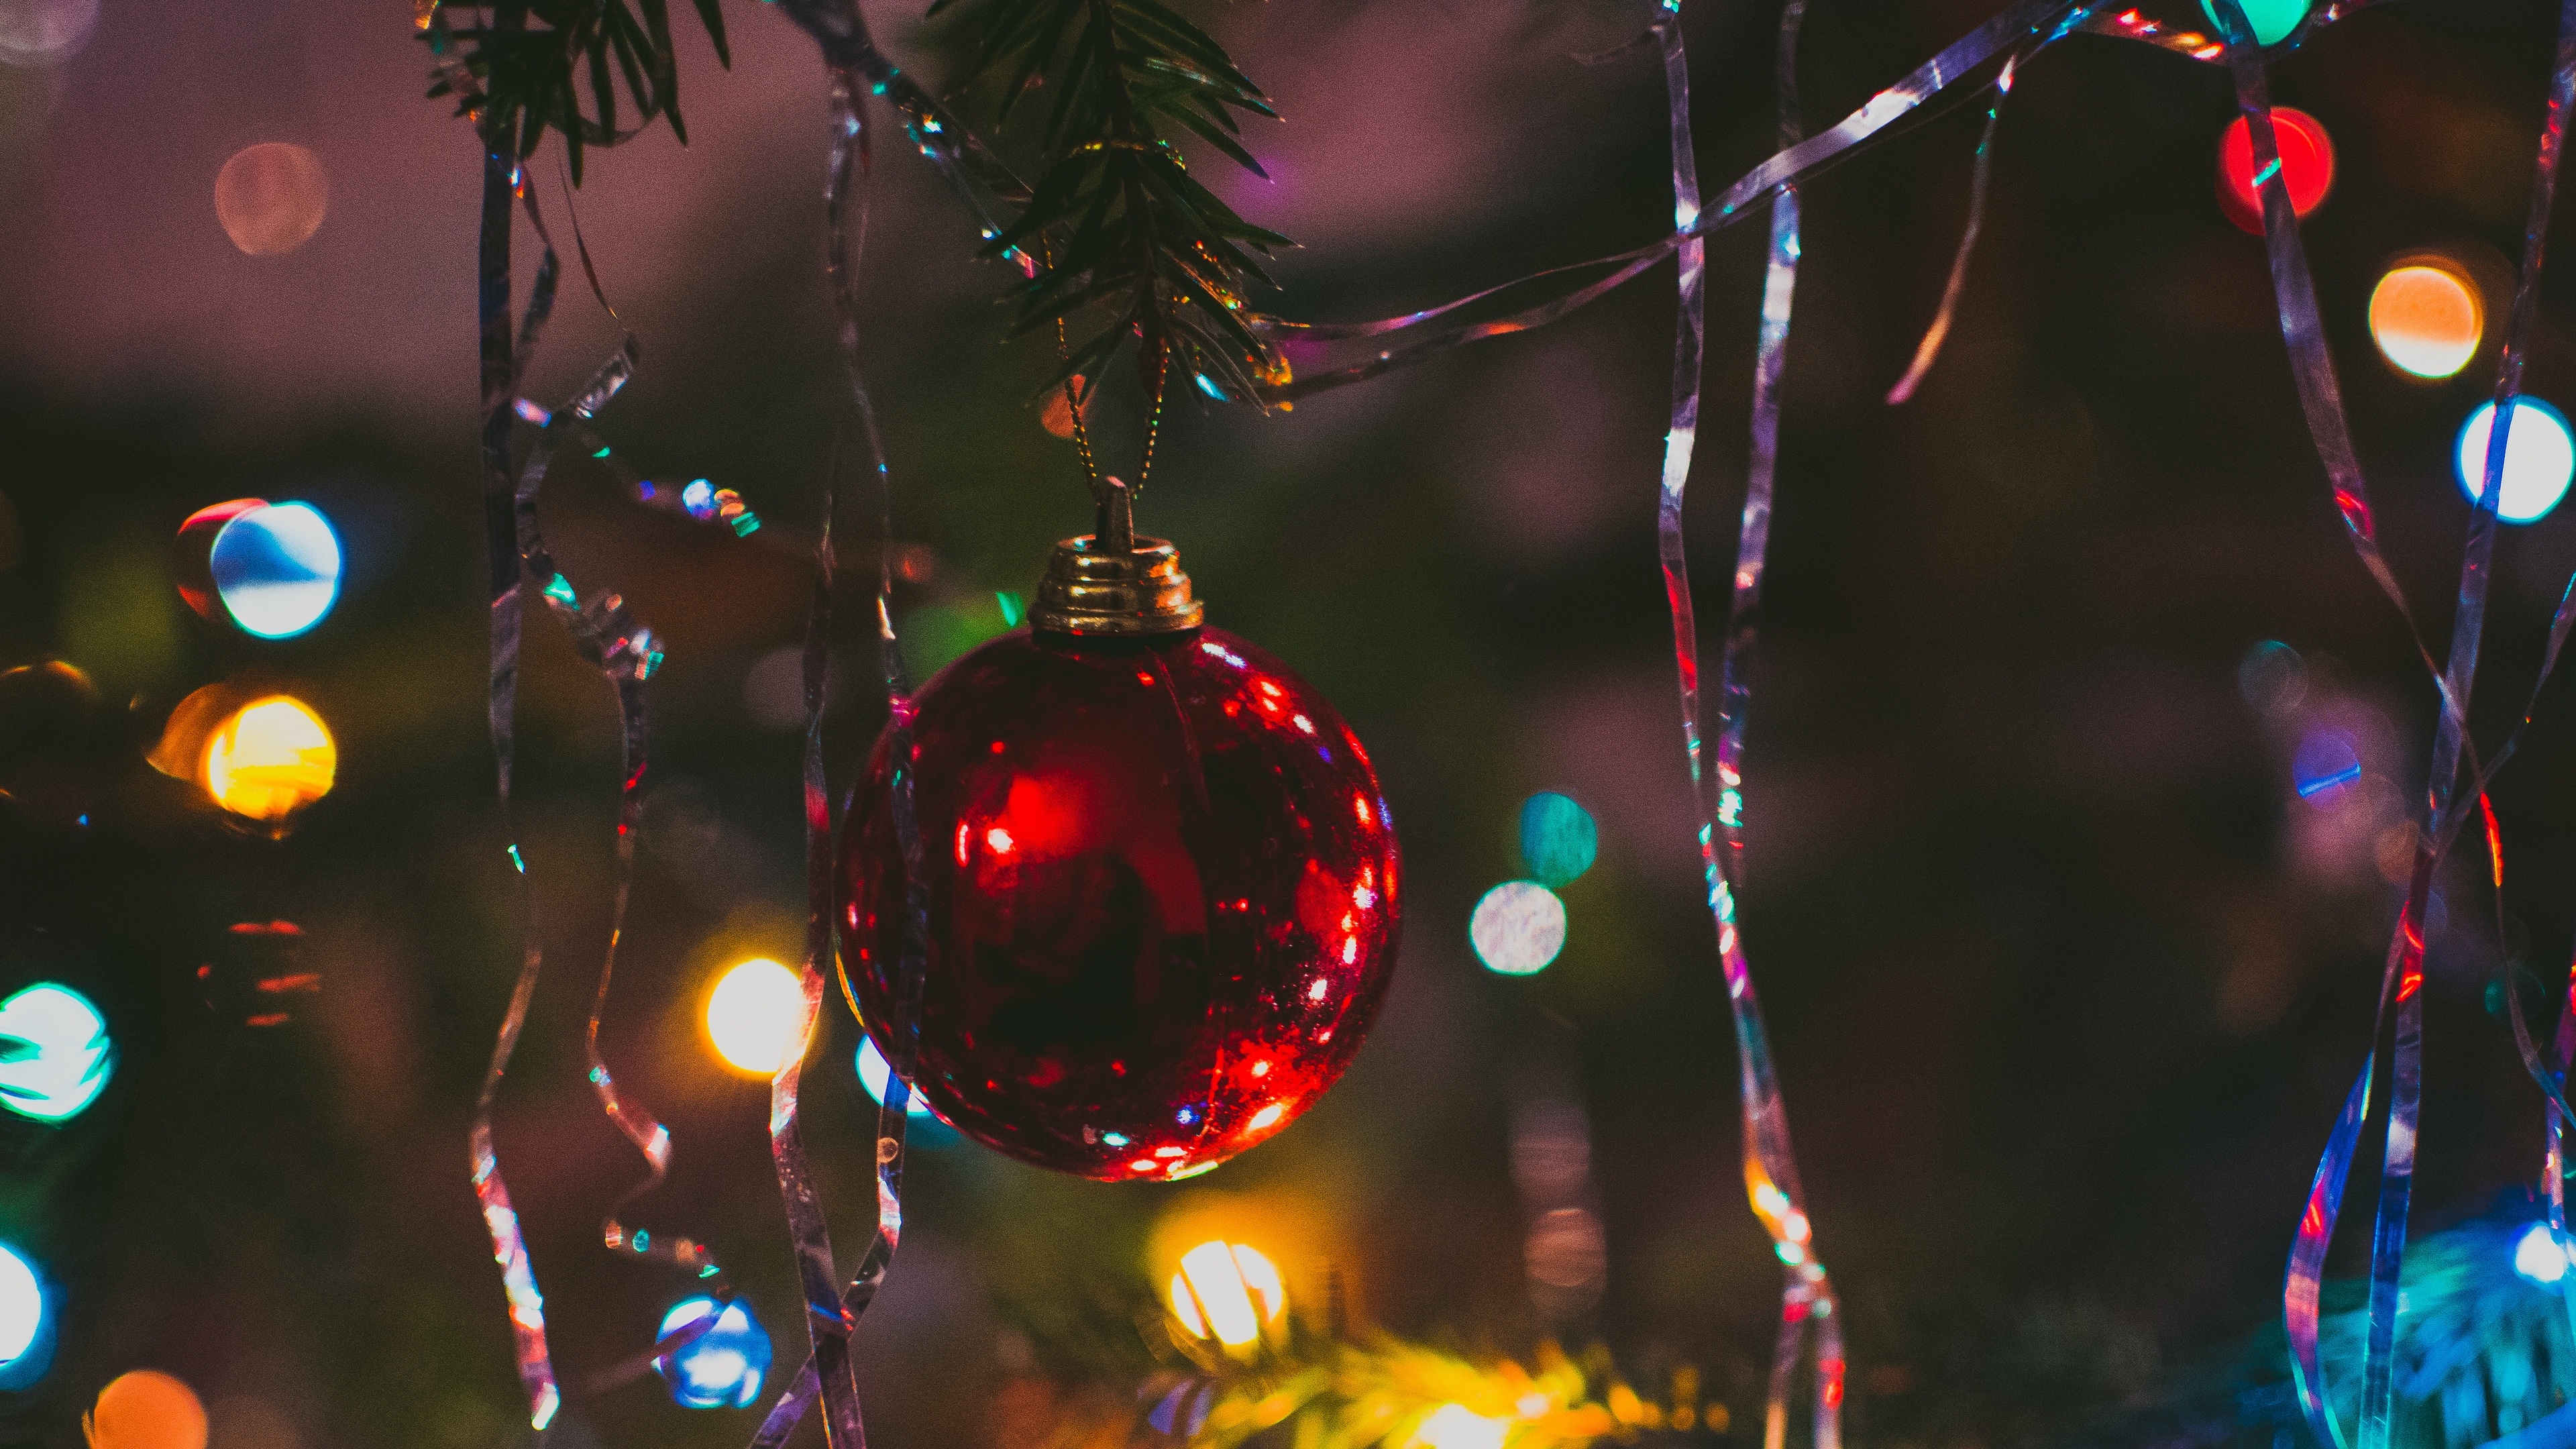 Hãy ngắm nhìn bức ảnh nền 4k với hình ảnh cây thông Noel đầy màu sắc, tạo cảm giác vô cùng ấm áp và chan hòa cho không gian phòng của bạn.